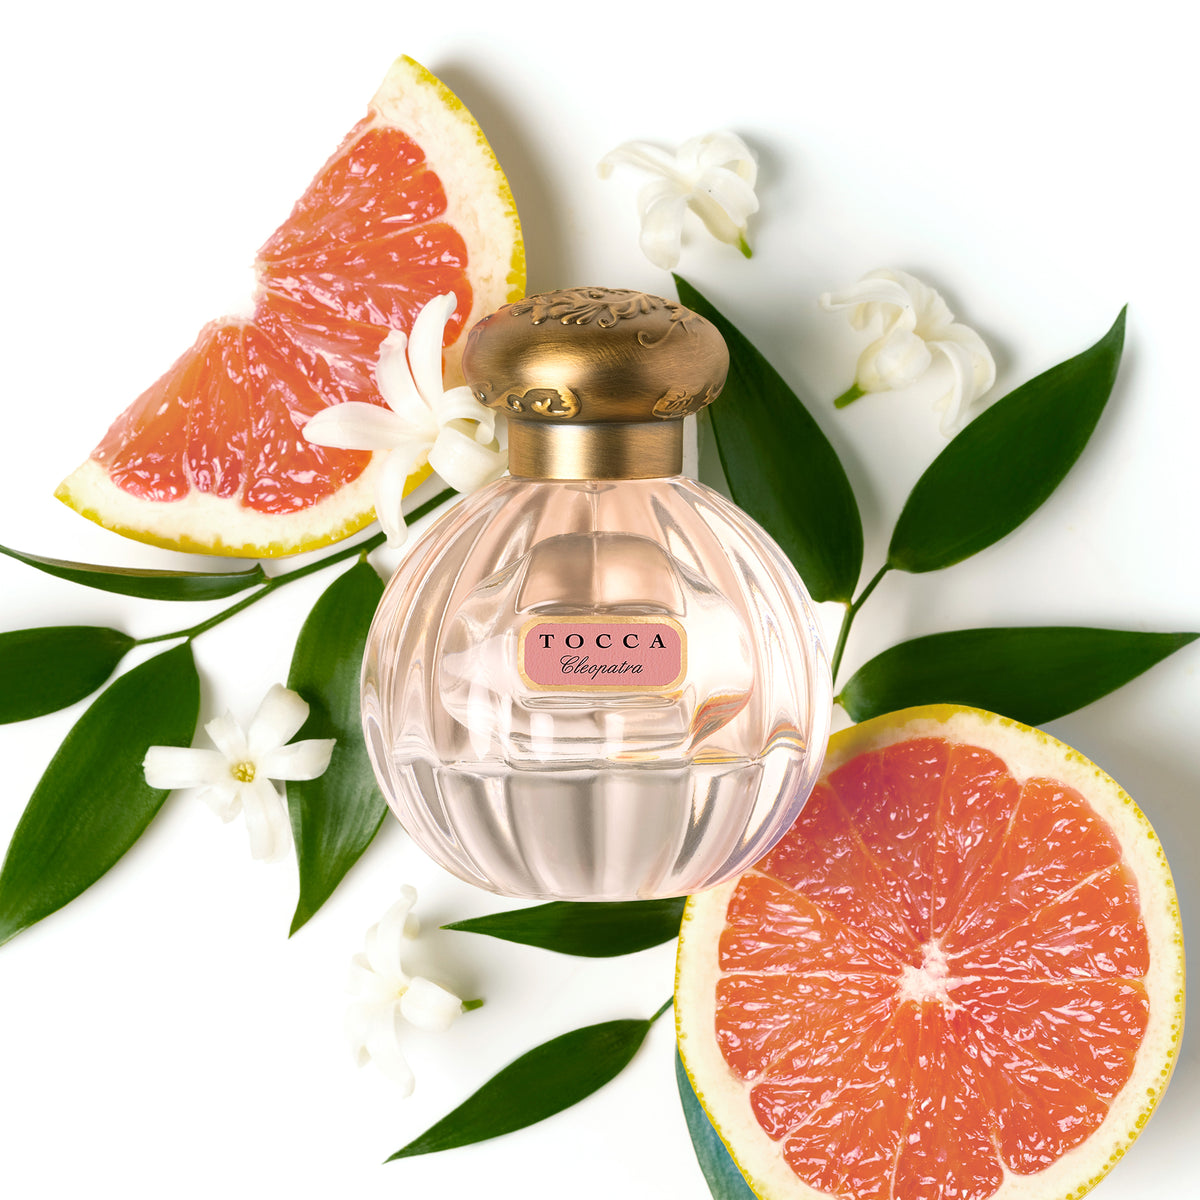 Florence Eau de Parfum bottle with flower and grapefruit